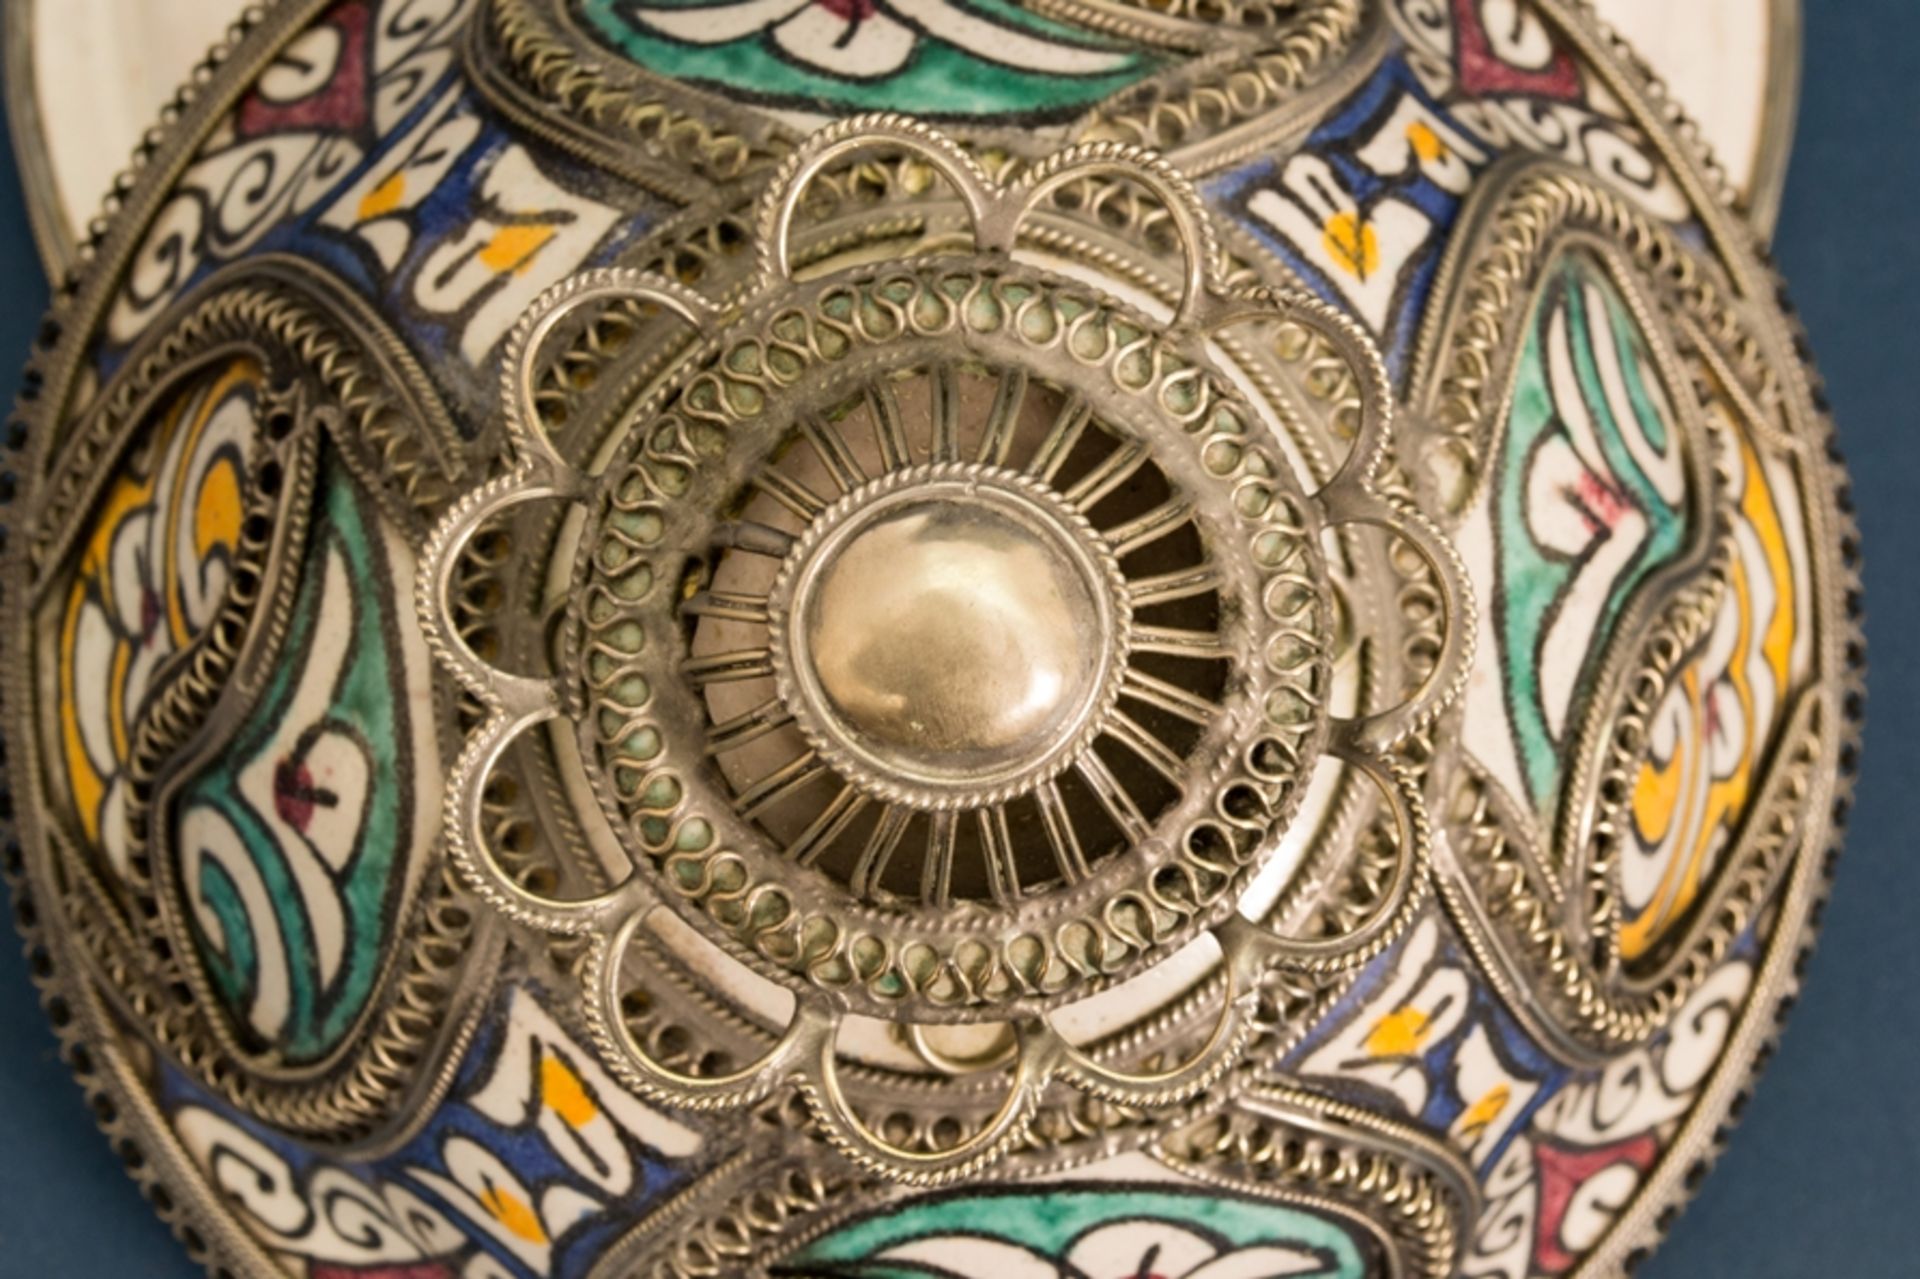 Orientalisches Deckelgefäß, polychrom staffierte, glasierte Keramik mit aufwändig gestaltetem, - Bild 12 aus 16